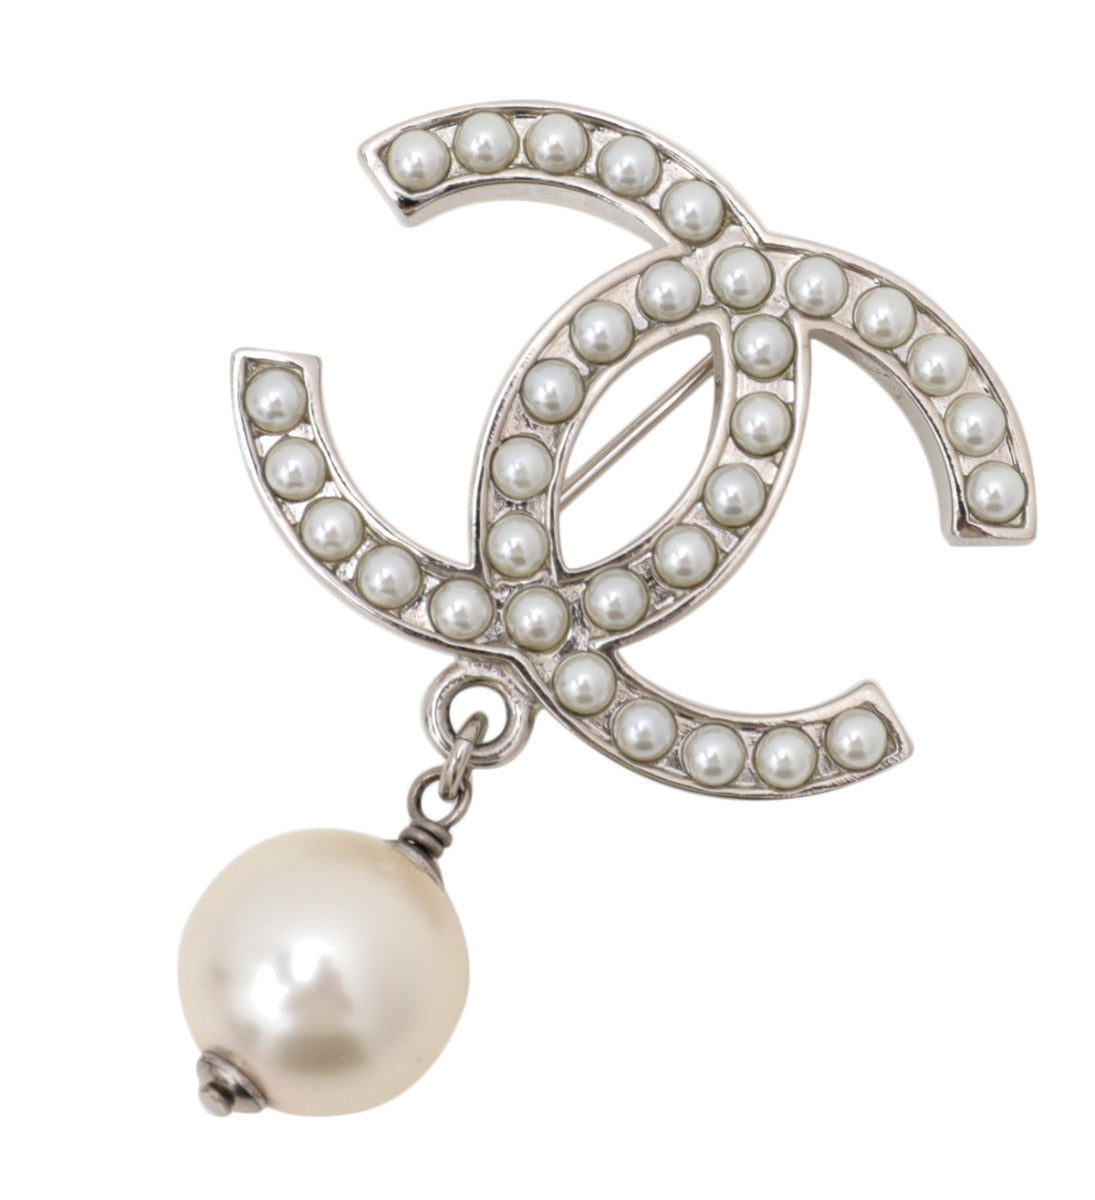 cc pearl brooch